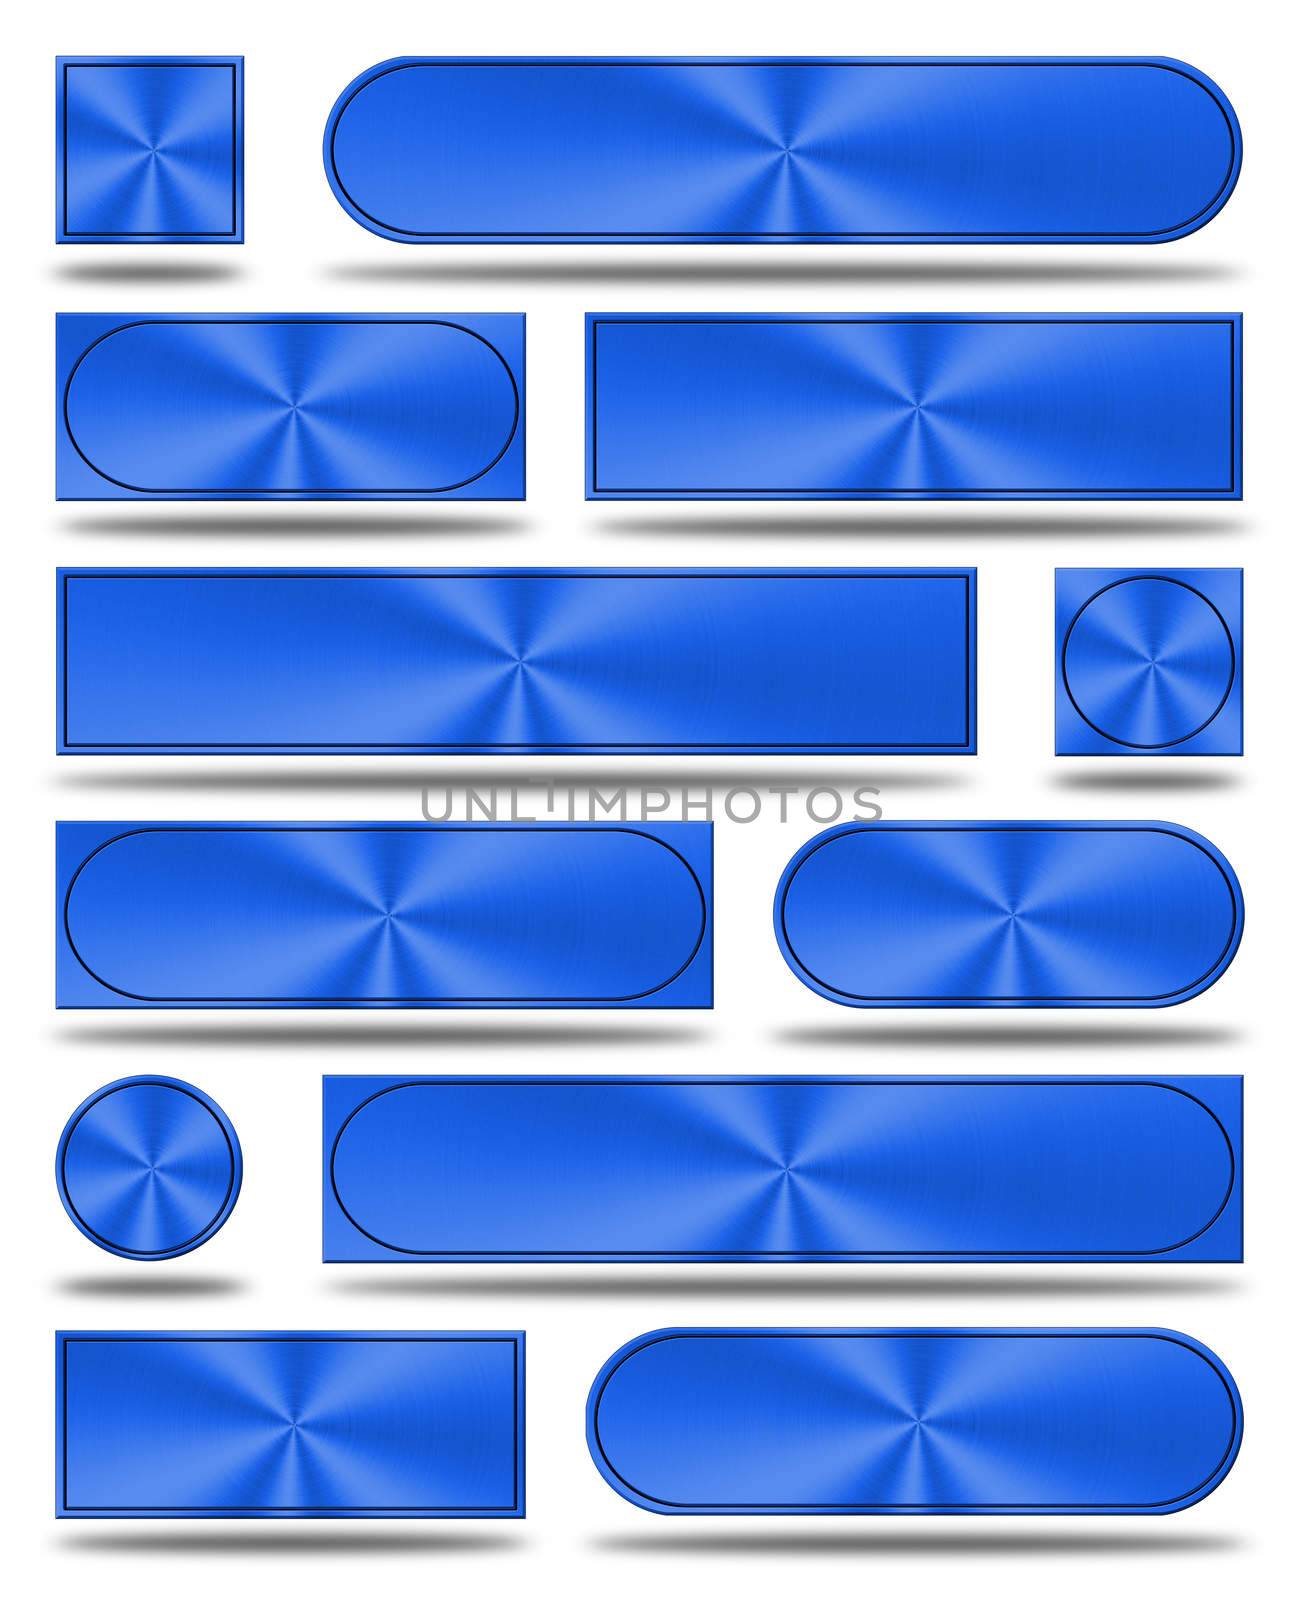 The aluminum buttons- blue version by konradkerker